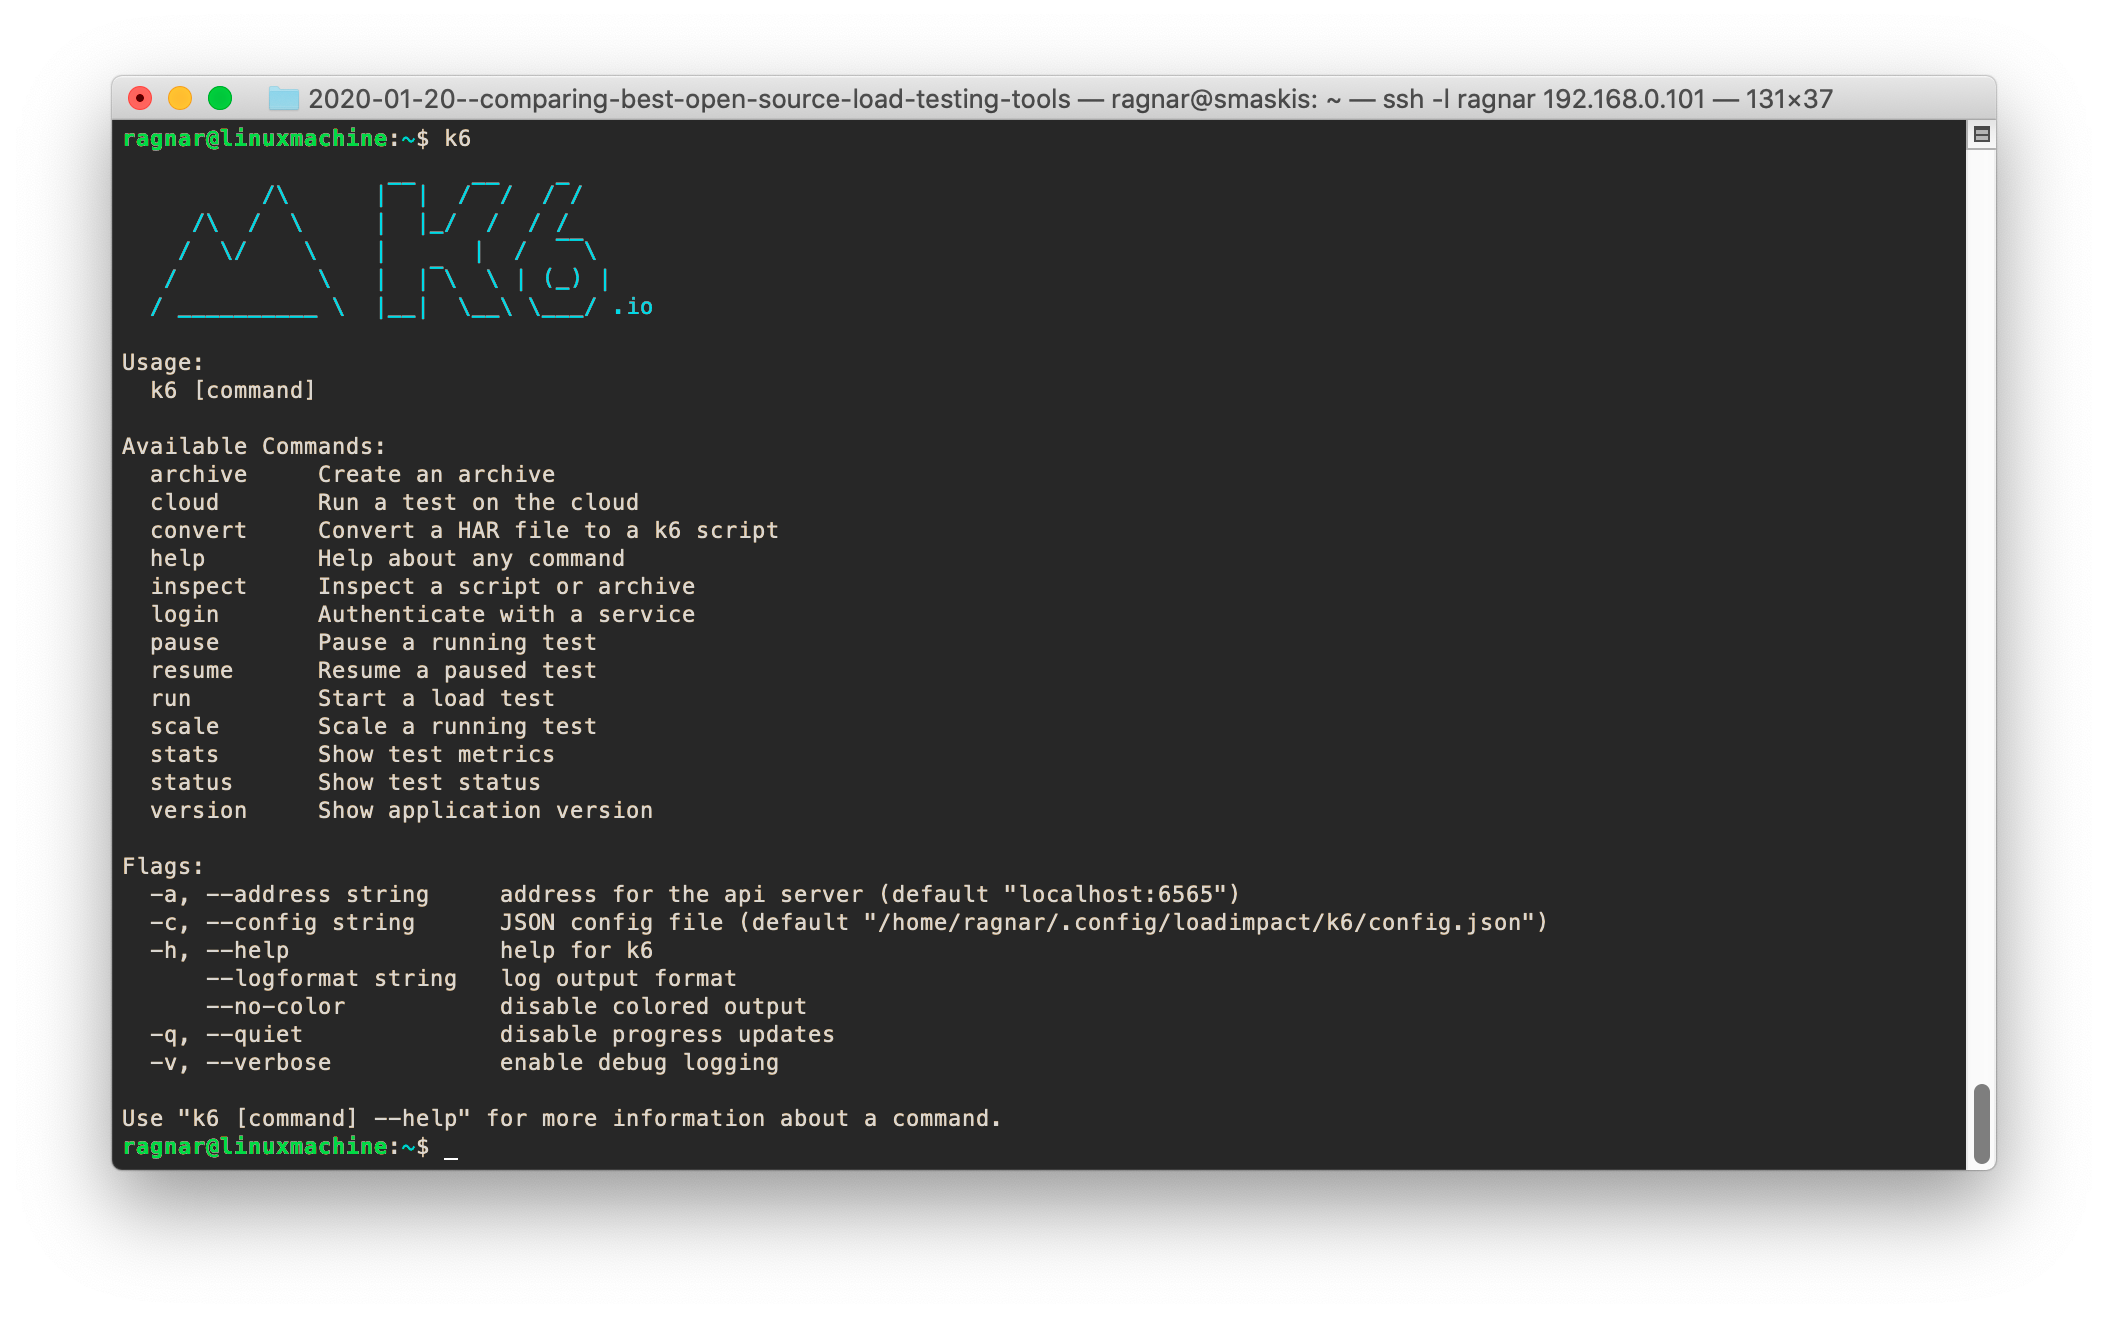 A screenshot of a k6 help output